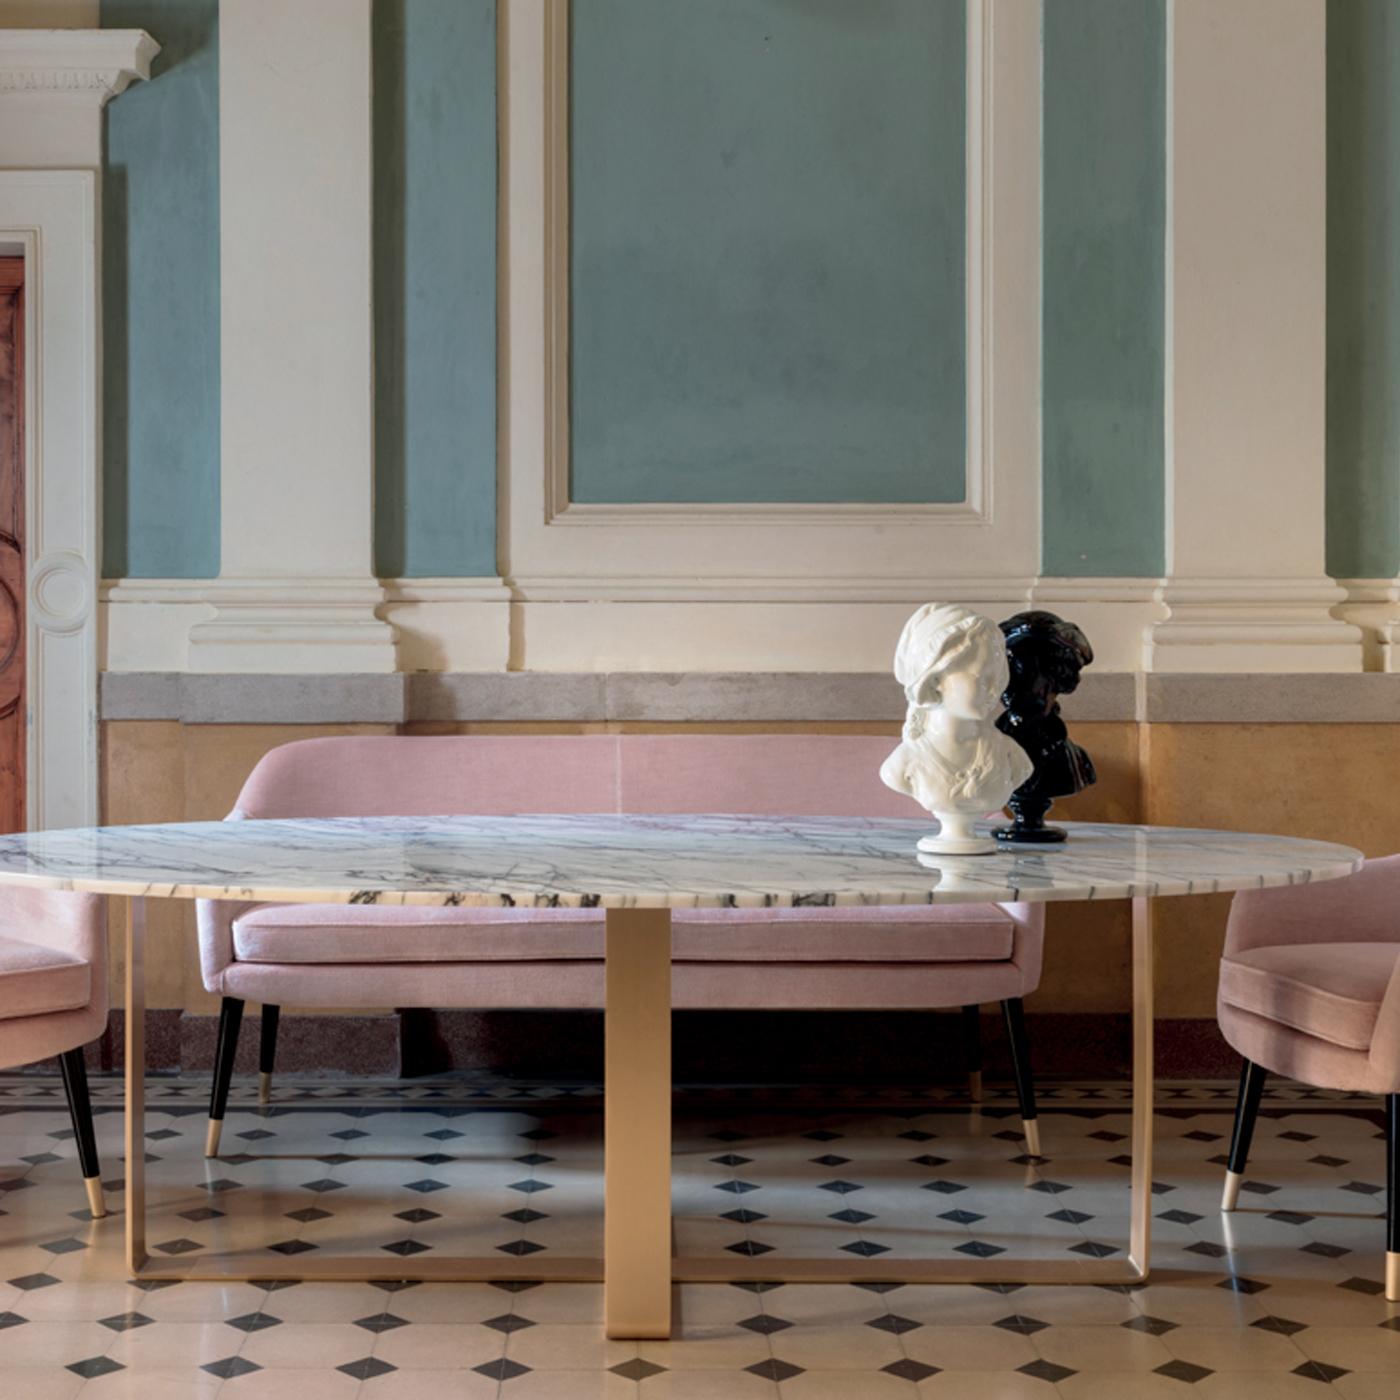 Un bel exemple du plus haut niveau d'artisanat et de matériaux de qualité, le superbe plateau en marbre violet et la base sculpturale en laiton se combinent pour créer cette superbe table à manger ovale qui brillera dans n'importe quelle salle à